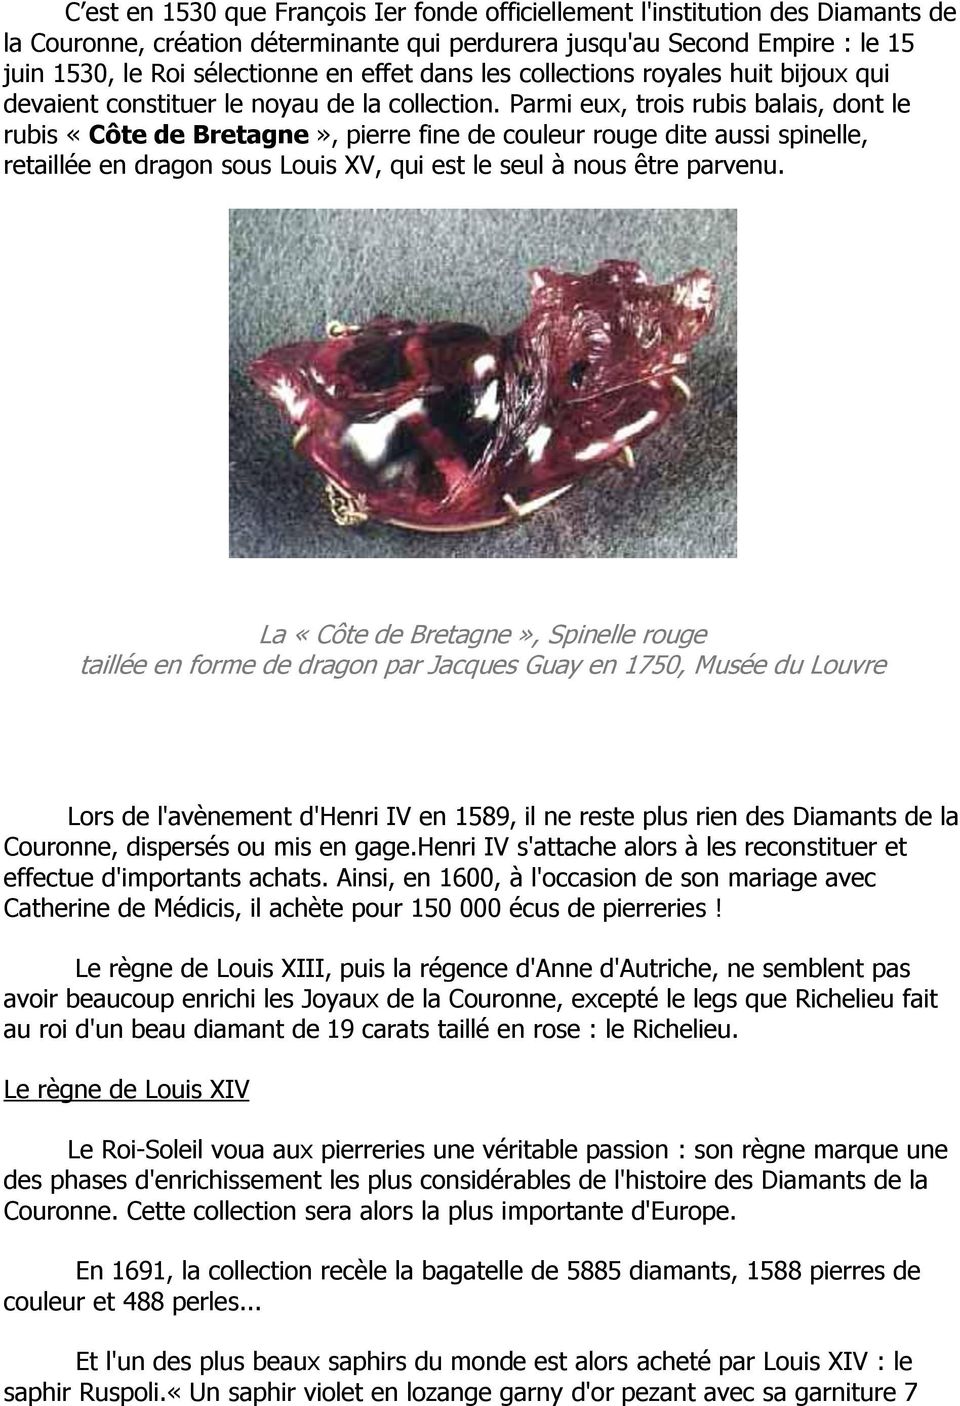 Parmi eux, trois rubis balais, dont le rubis «Côte de Bretagne», pierre fine de couleur rouge dite aussi spinelle, retaillée en dragon sous Louis XV, qui est le seul à nous être parvenu.